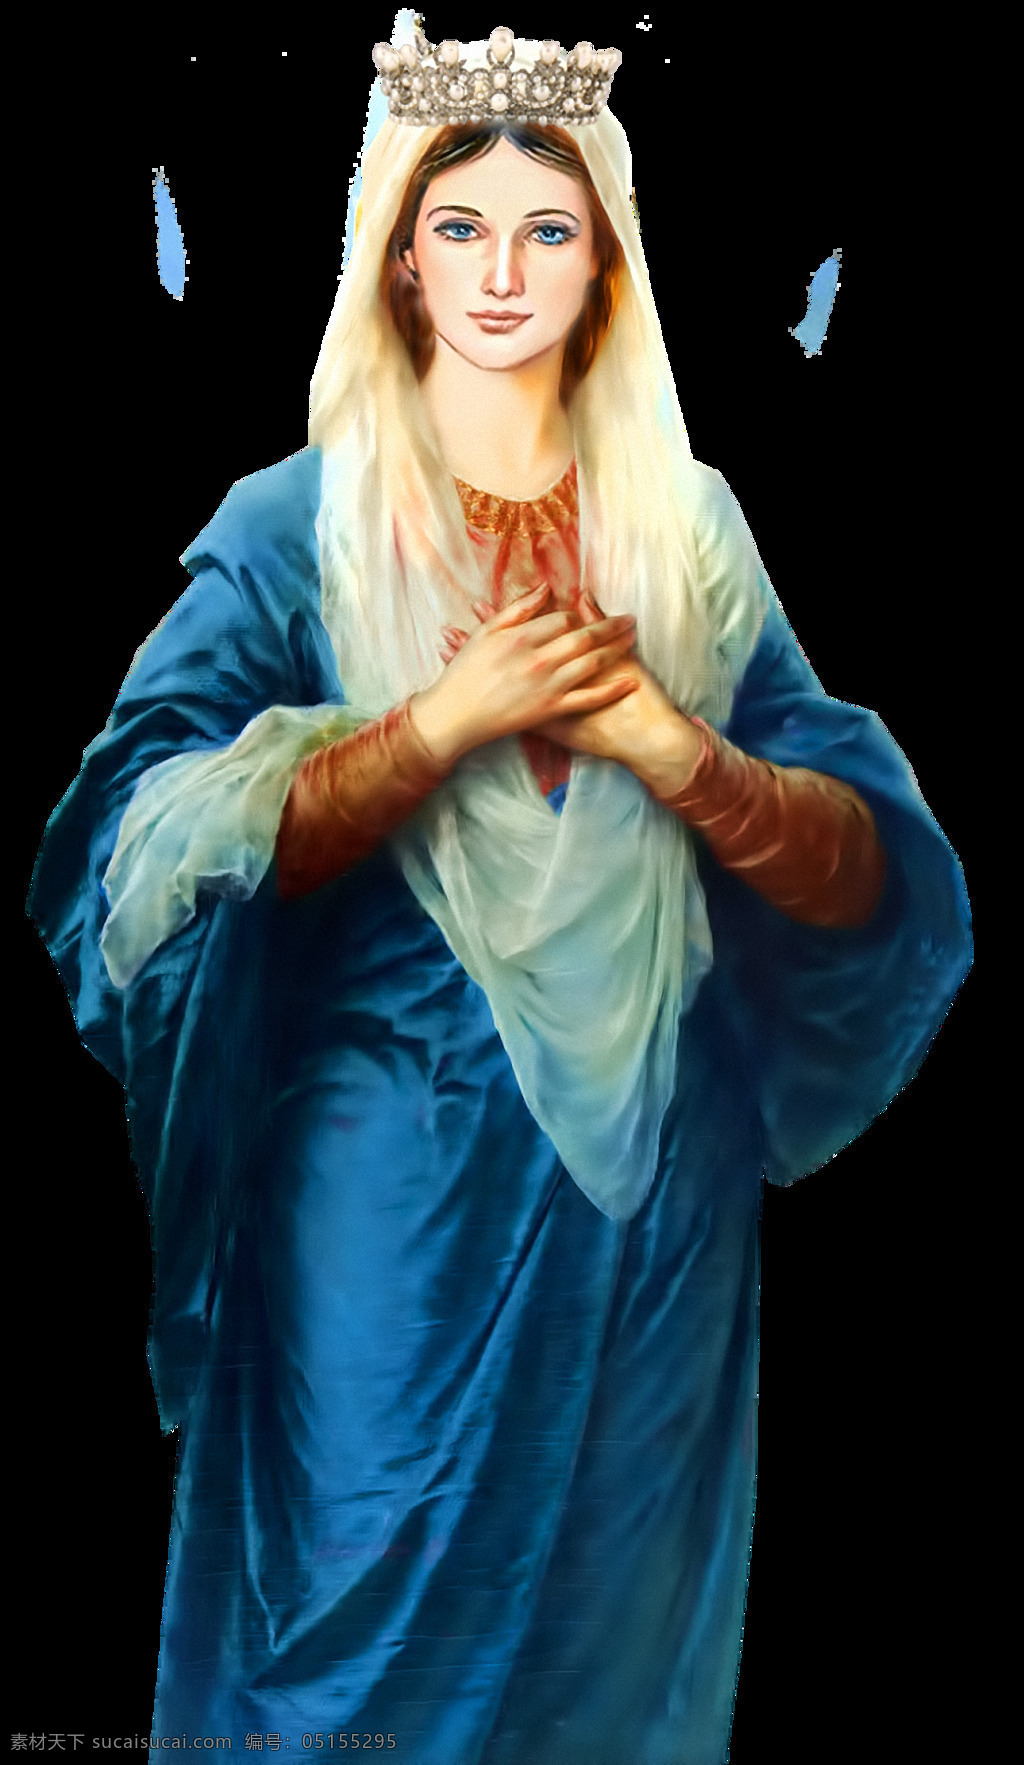 蓝色 衣服 圣玛丽 免 抠 透明 圣母 玛利亚 白描 高清 壁画 抱 耶稣 手绘 圣母像 手绘圣母像 耶稣他娘像 圣母油画像